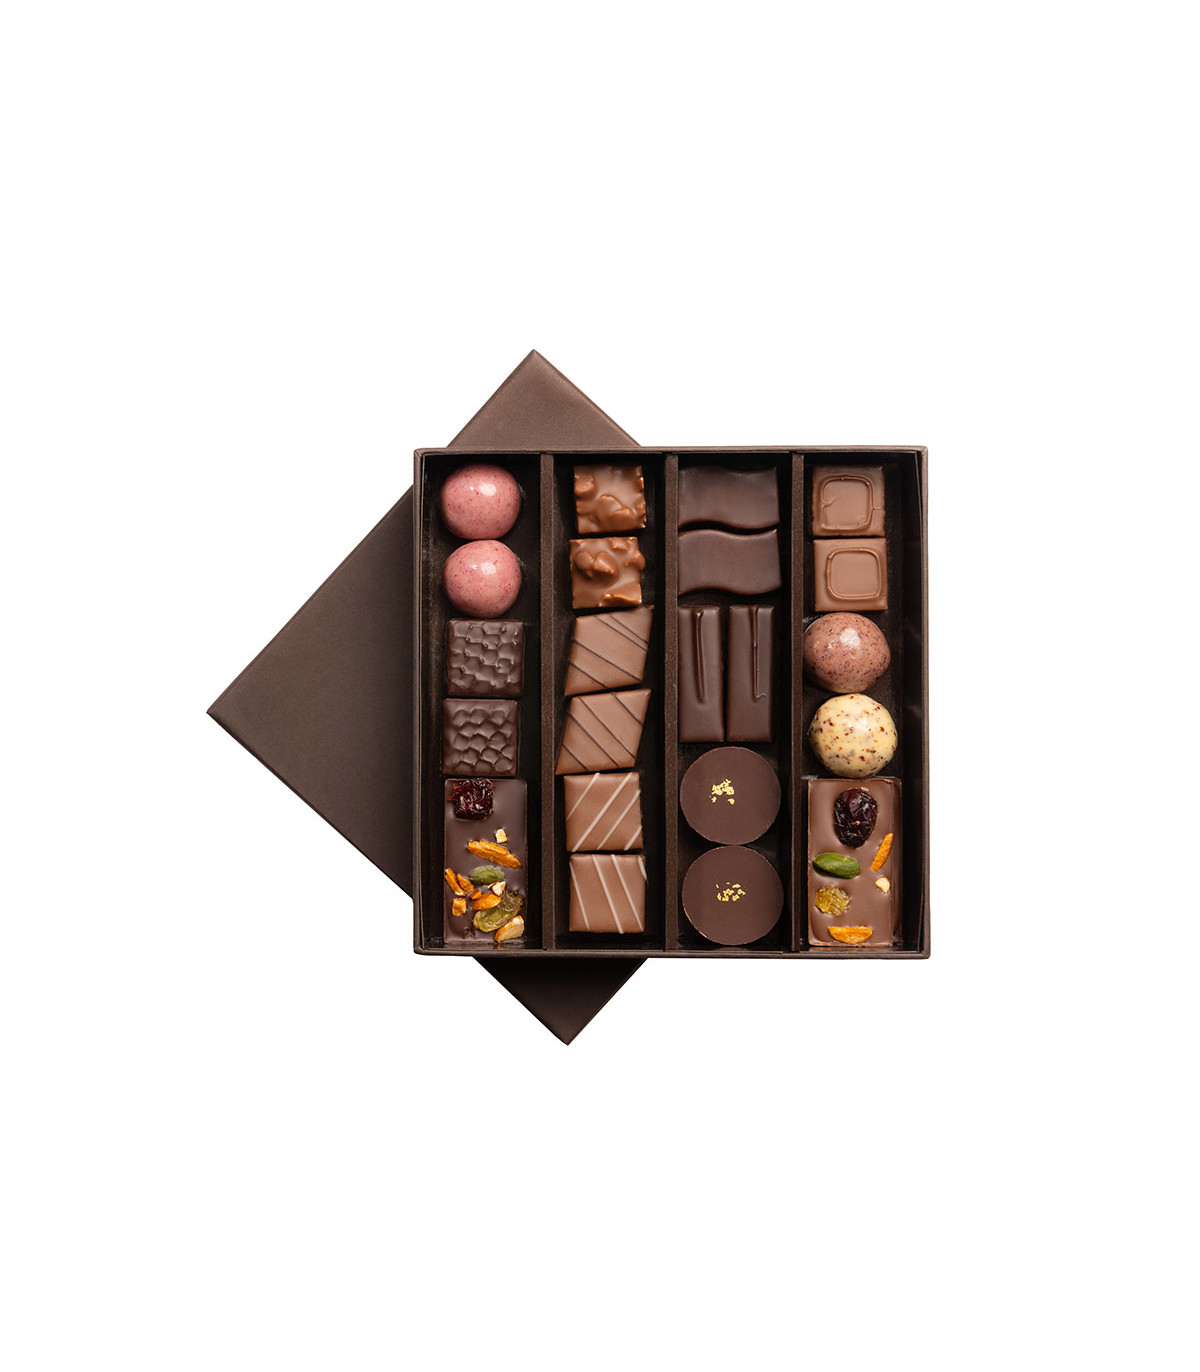 Coeur en chocolat - Boutique de chocolat D'lys couleurs